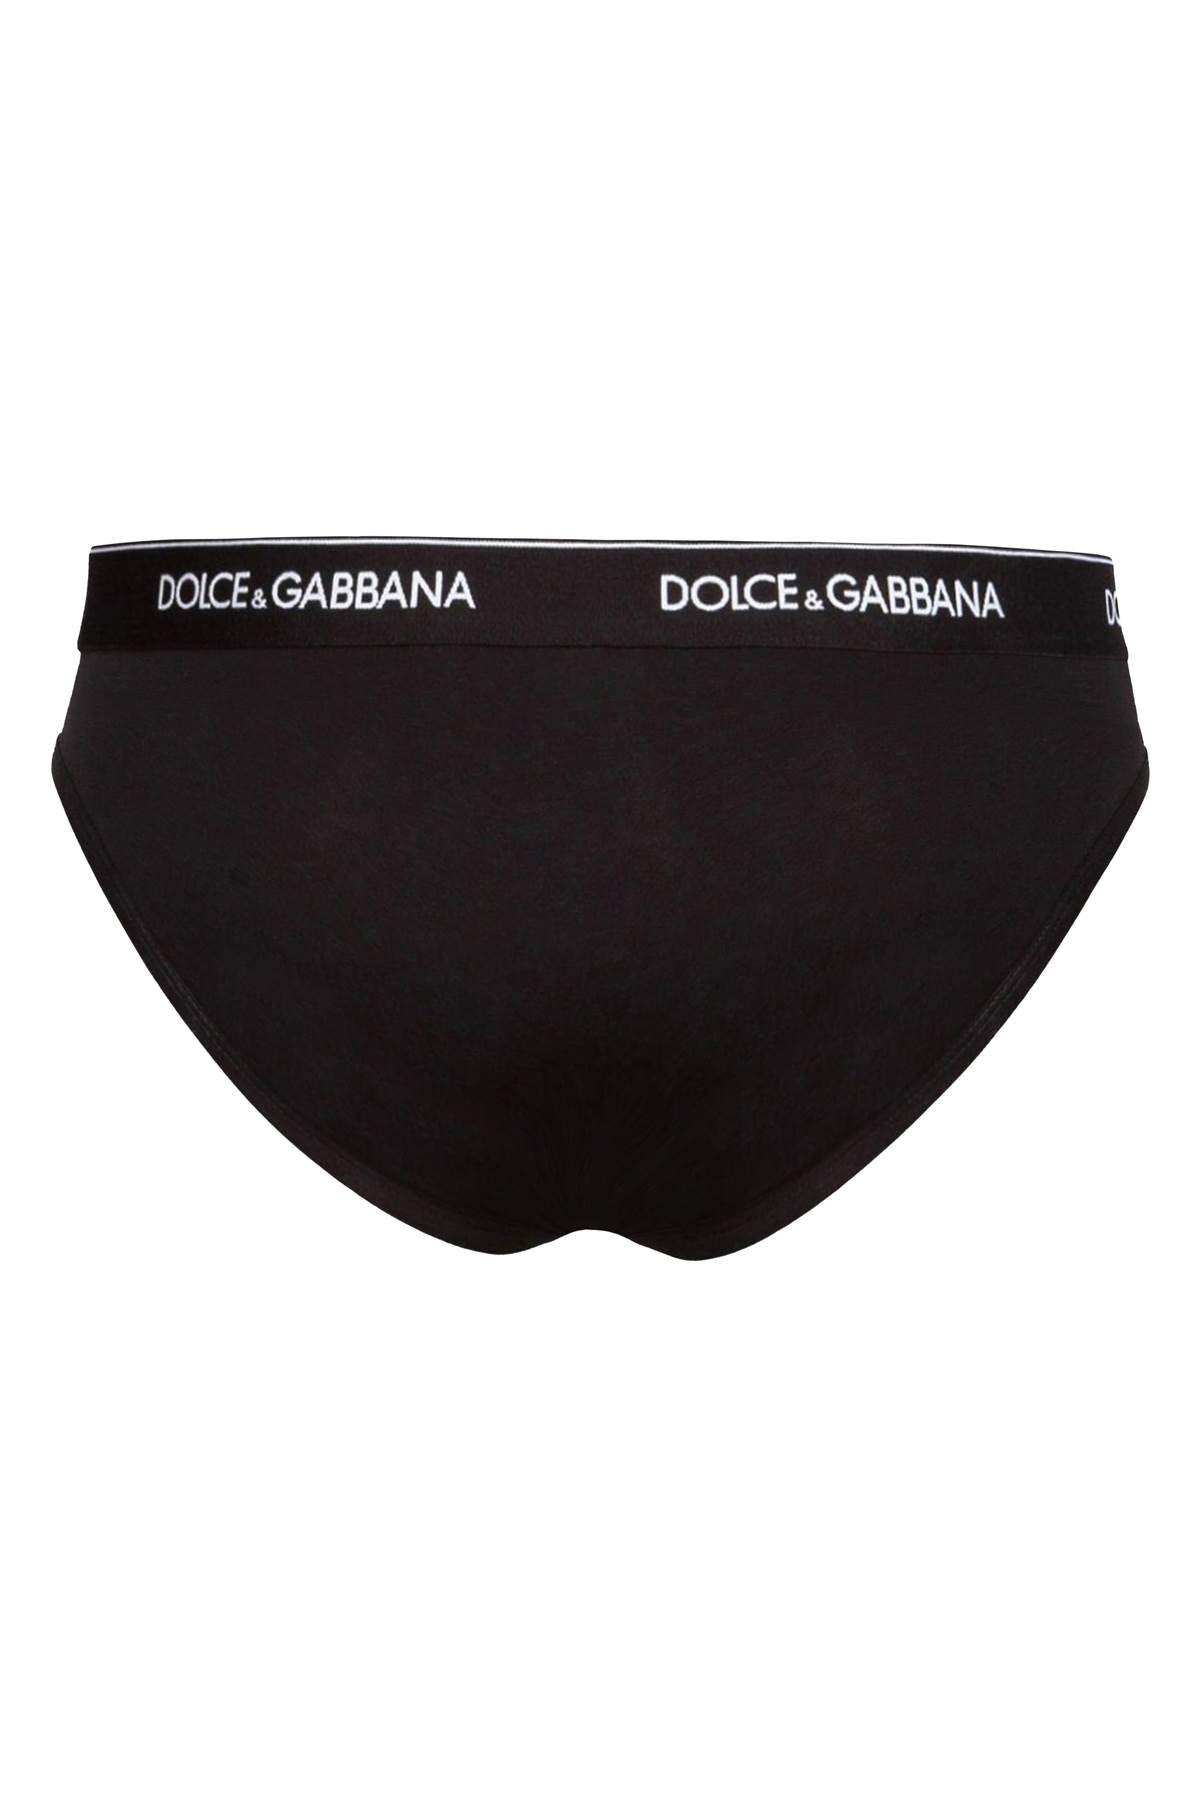 Dolce & Gabbana Underwear Briefs Bi in Black for Men